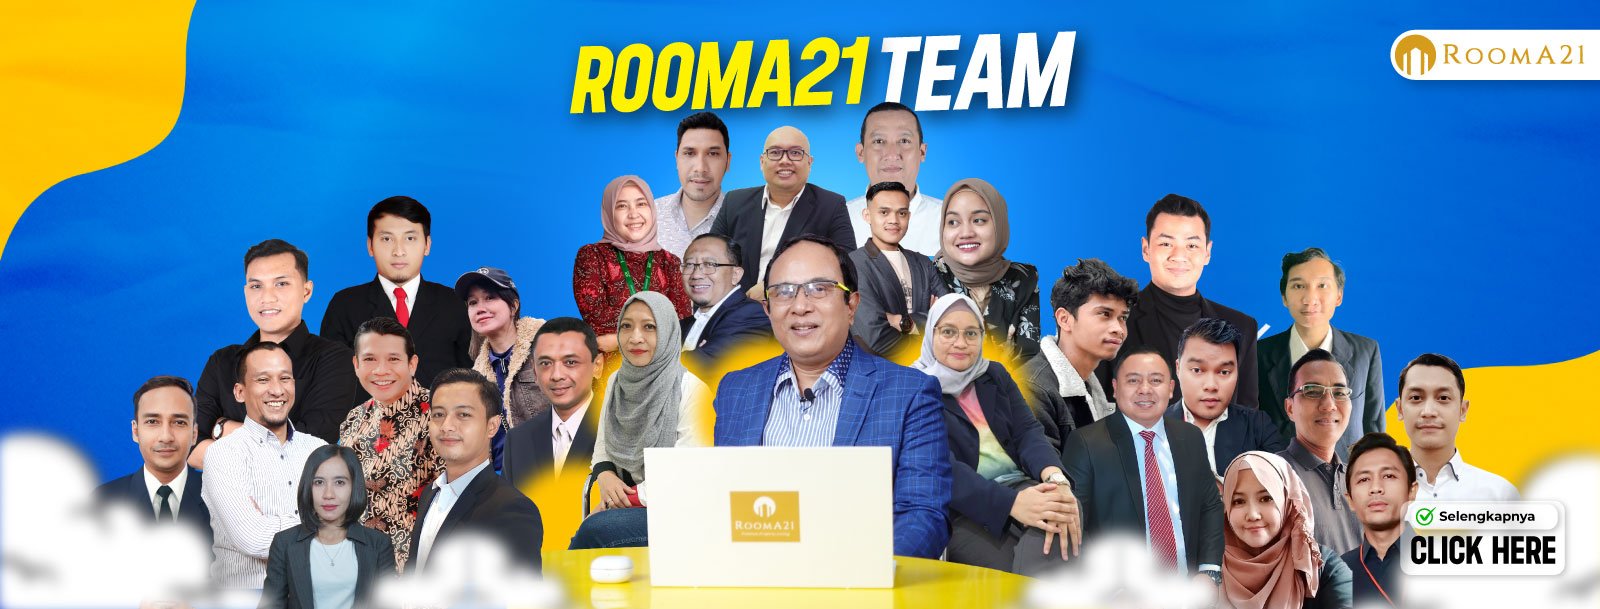 rooma21 team